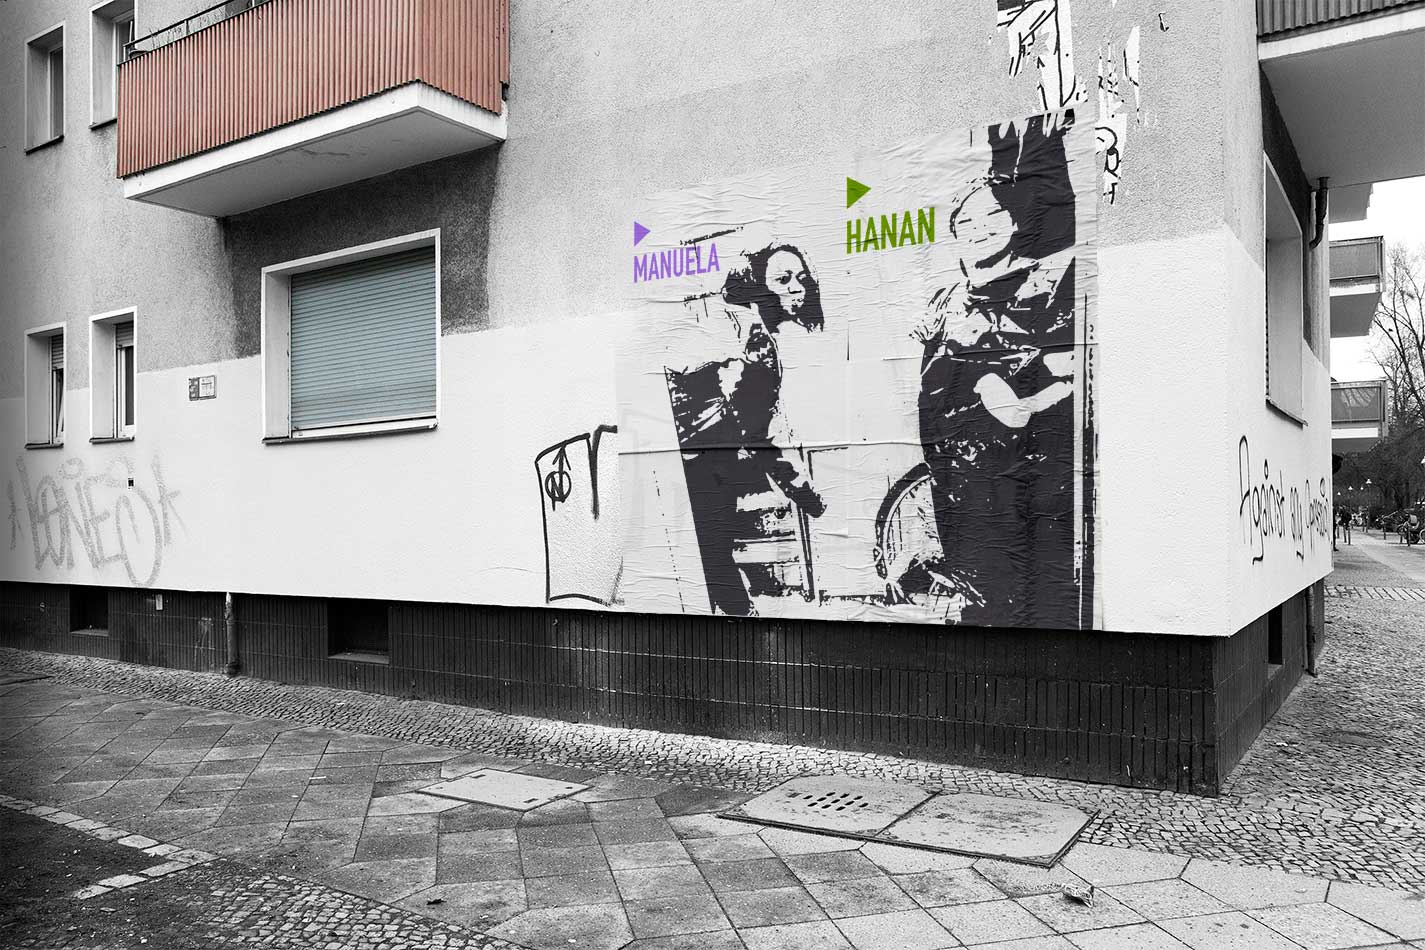 Foto/Illustration Kreuzberger Eckhaus mit Manuela & Hanan als Paste-Up